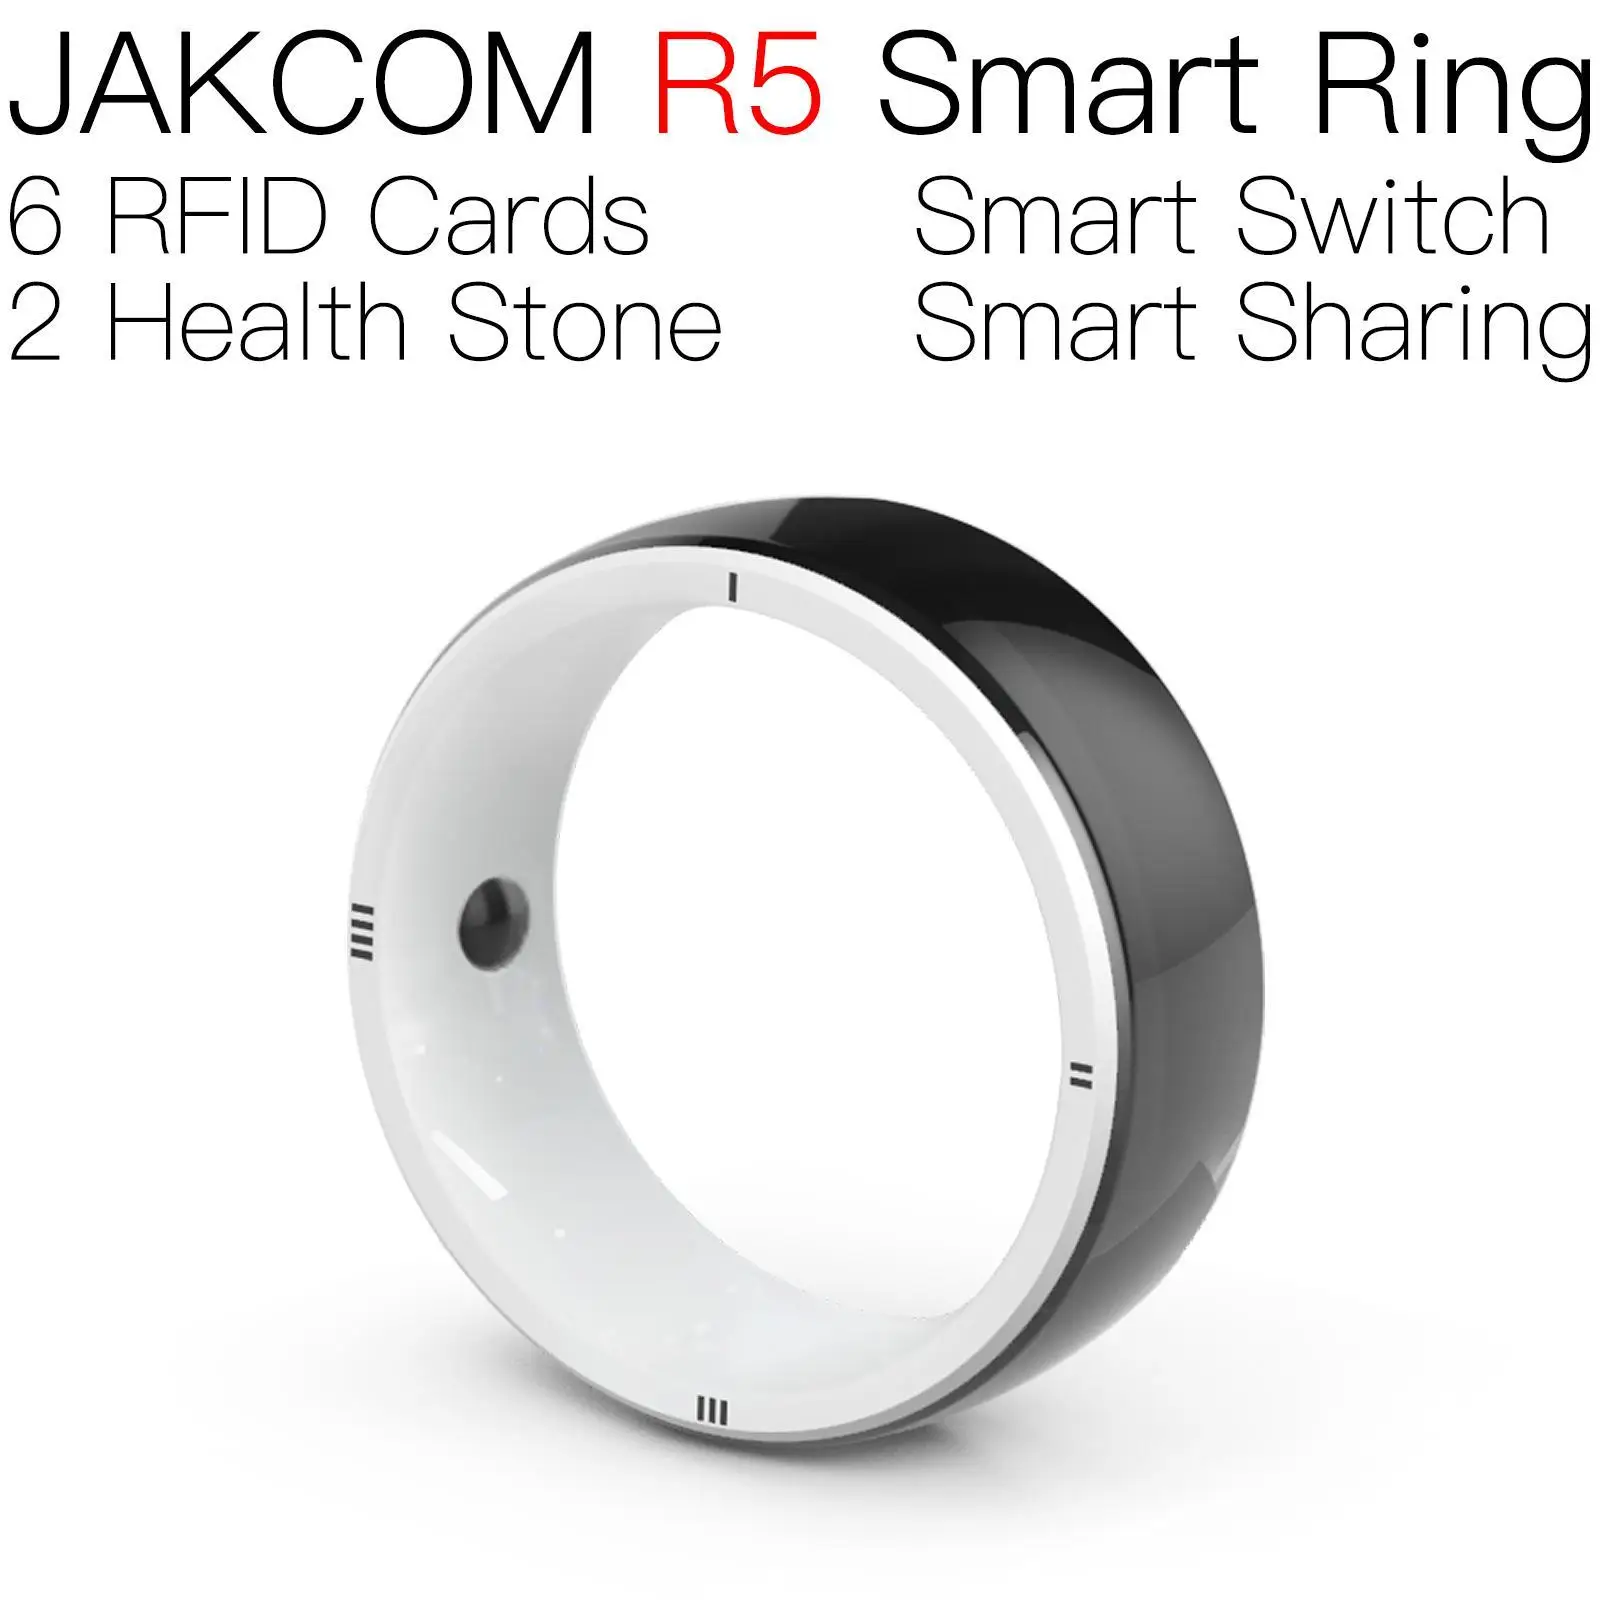 

Умное кольцо JAKCOM R5, подходящее к открыткам с животными, чип jeringa vidrio lote iso7816, карта радиочастотной идентификации, большой радиус действия, электронная идентификация для игр